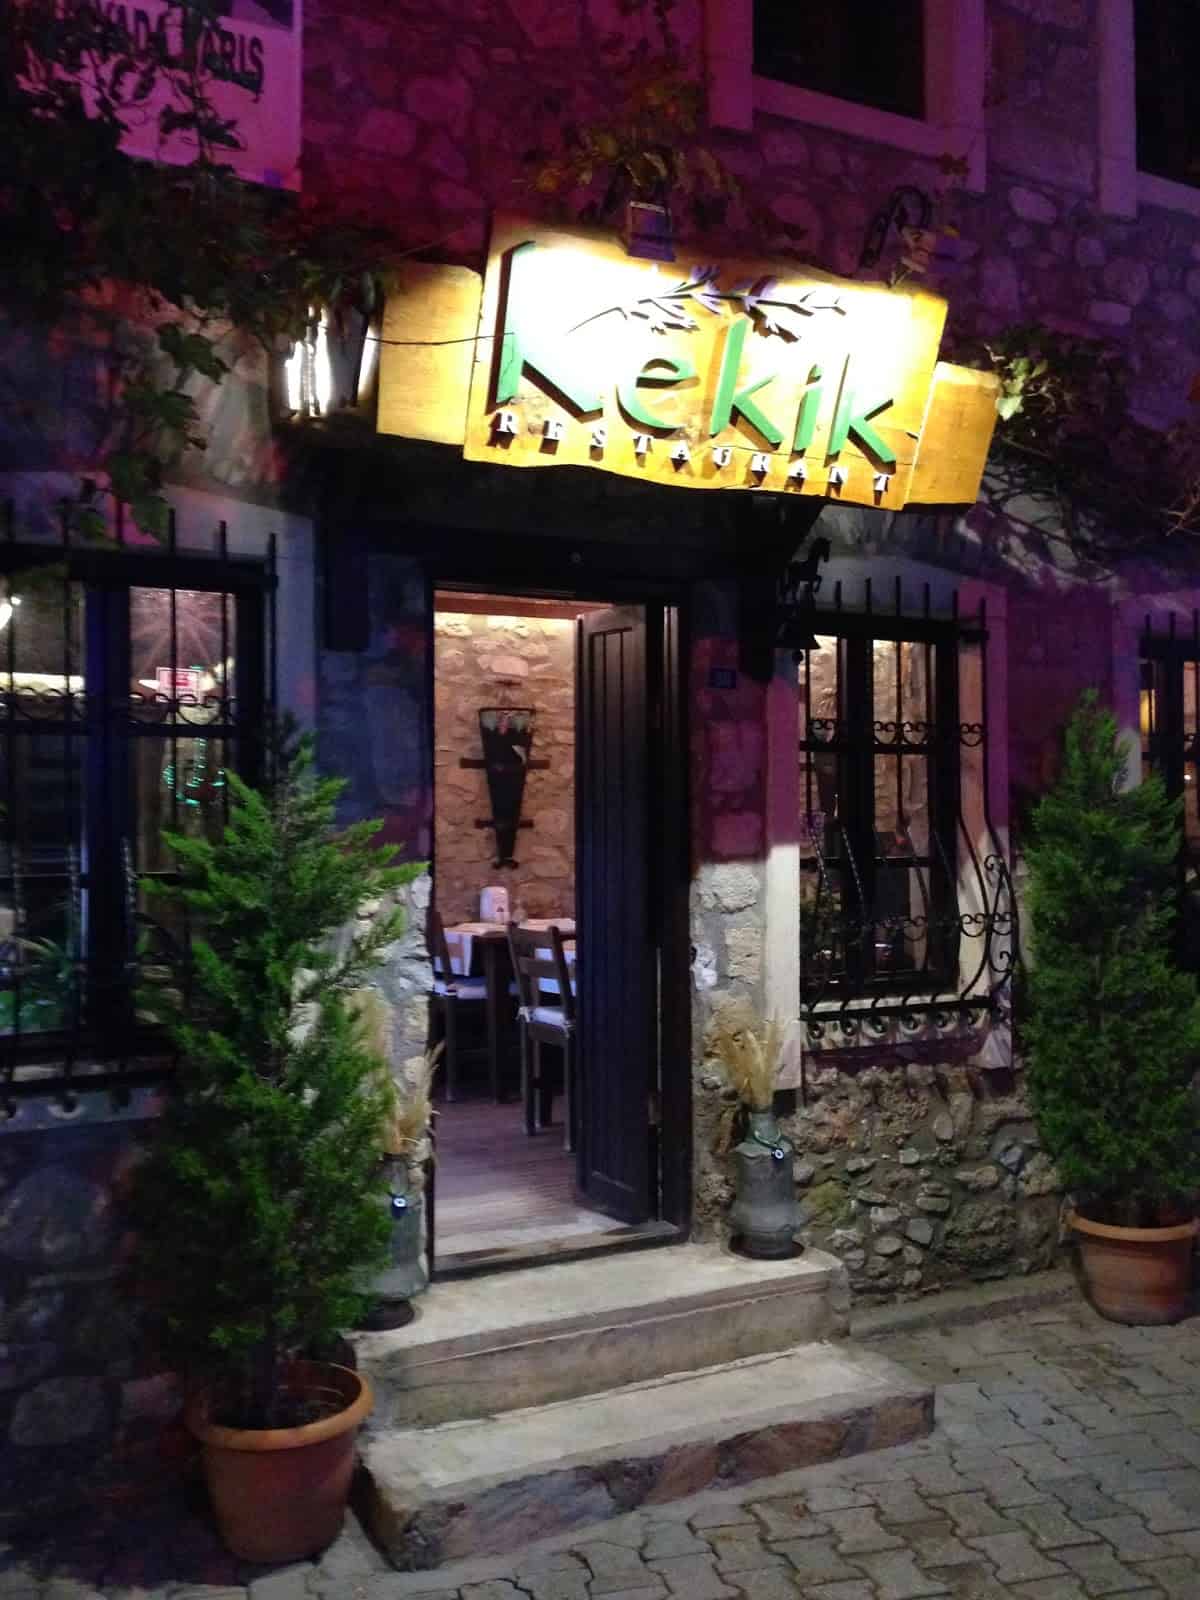 Kekik in Datça, Turkey